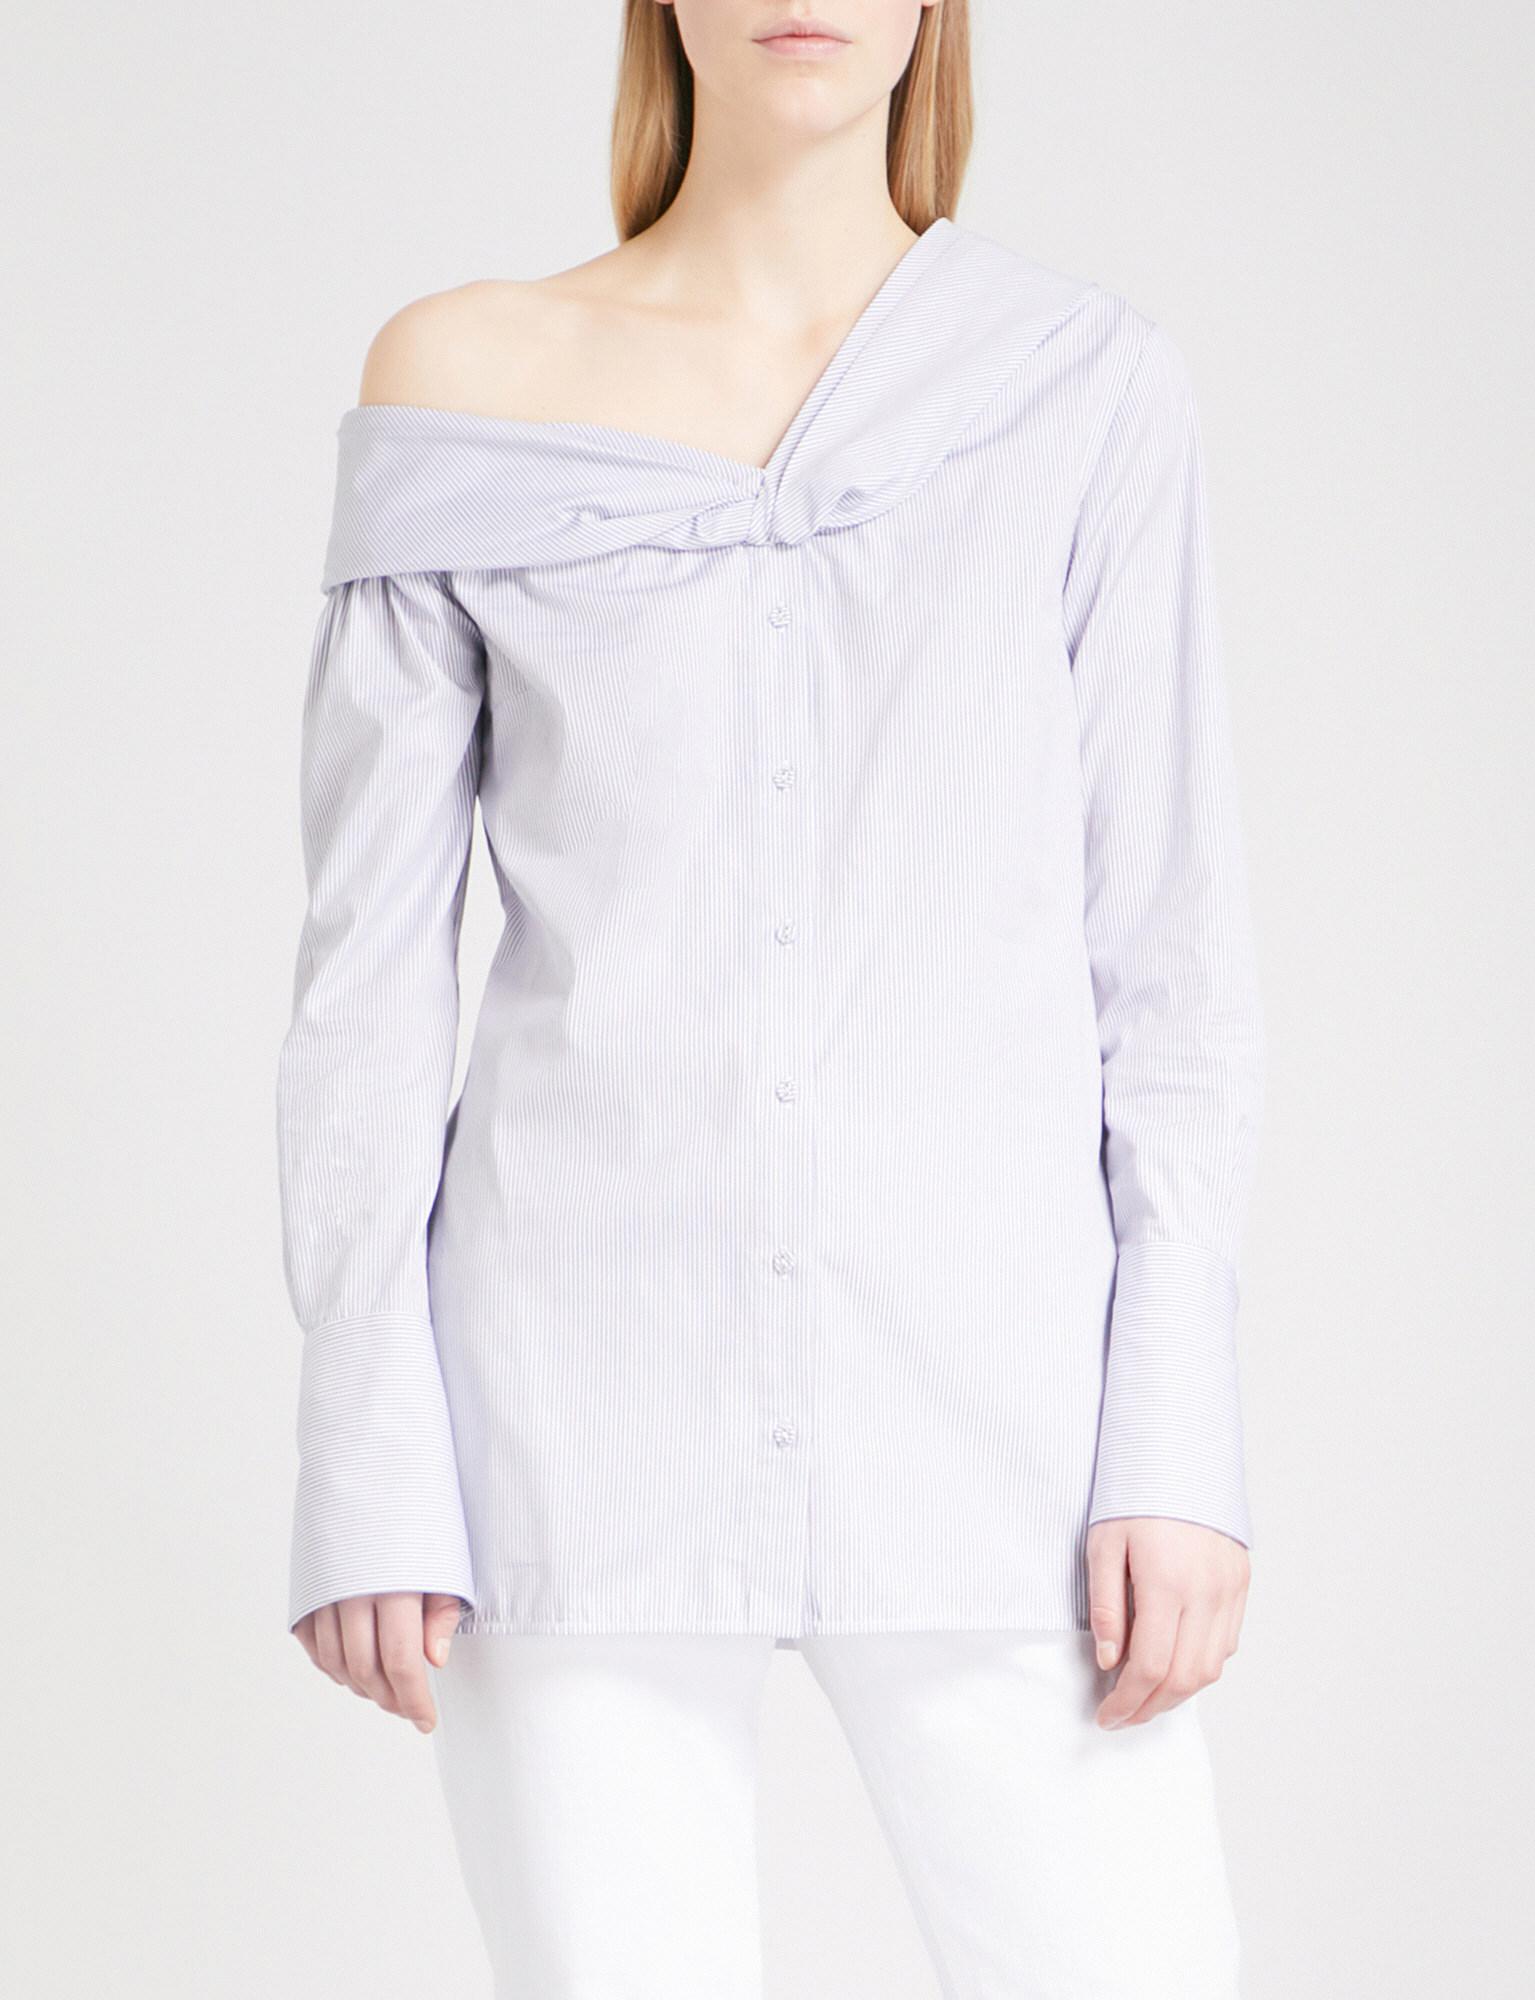 Victoria, Victoria Beckham One-shoulder Striped Cotton Shirt in White - Lyst1535 x 2000